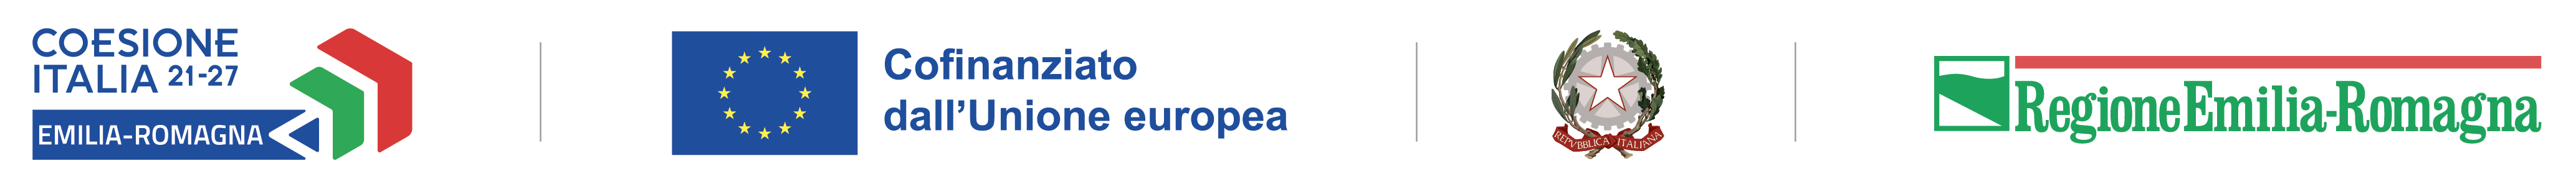 logo unico nazionale per la politica di coesione 2021-2027, declinato per l’Emilia-Romagna